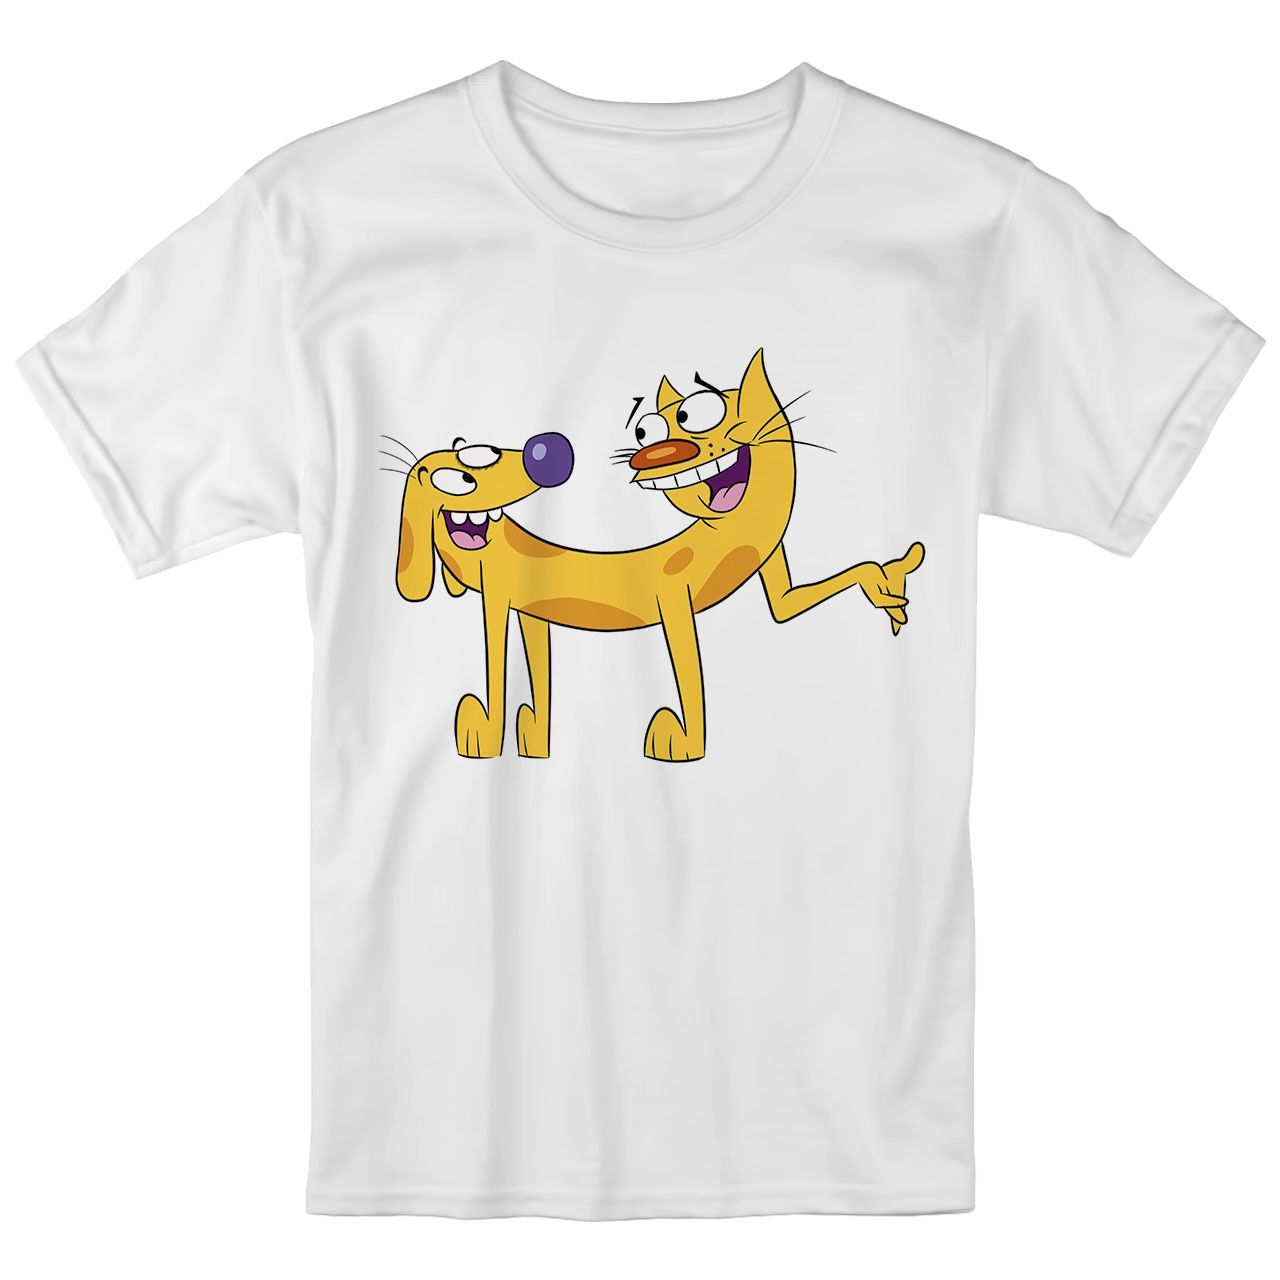 تی شرت بچگانه انارچاپ طرح گربه سگ مدل T09020 -  - 1